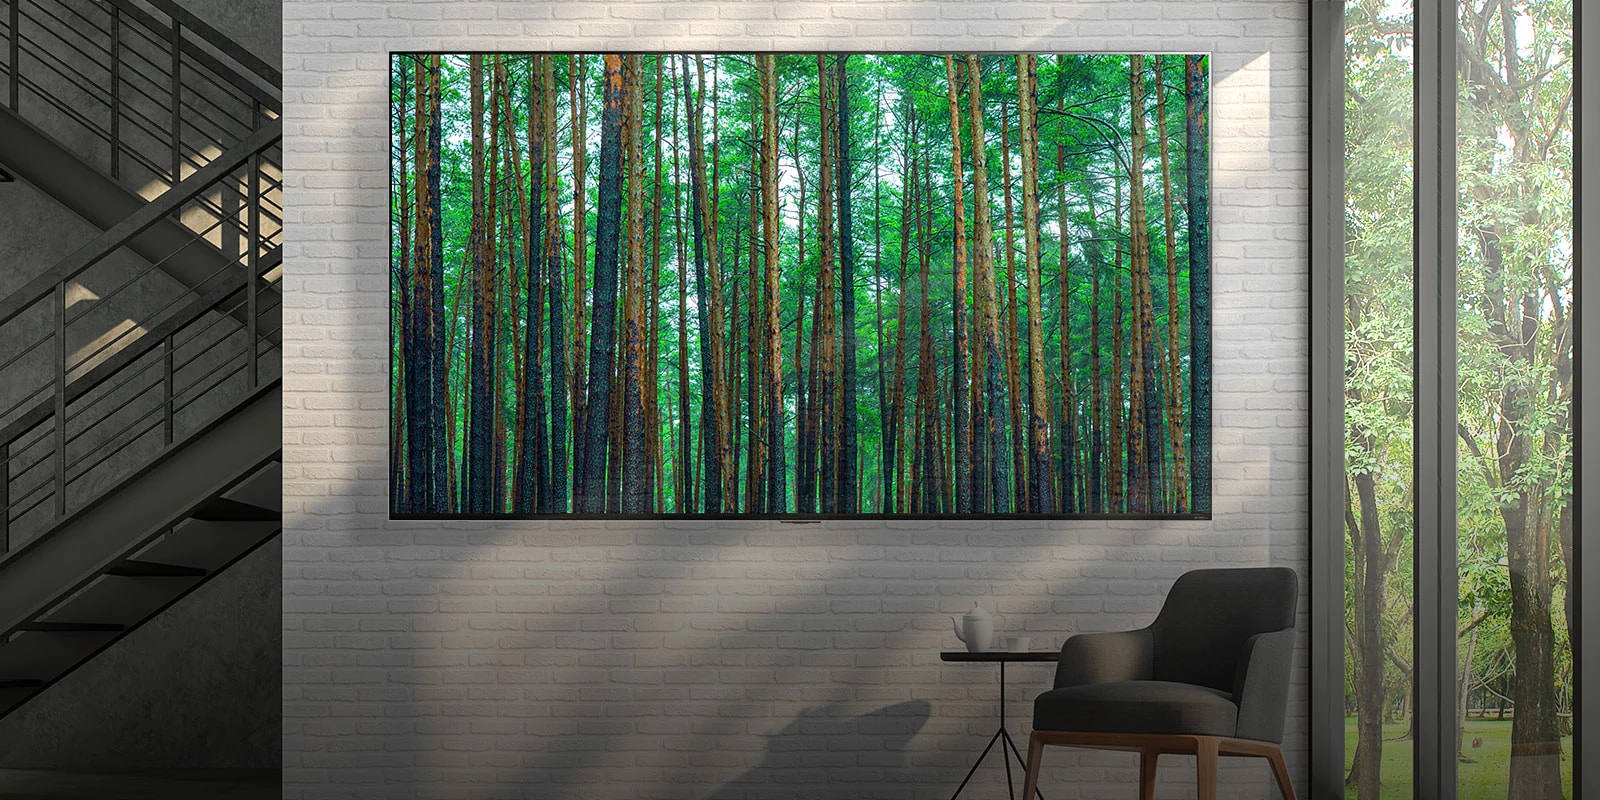 تلفزيون QNED MIni LED من إل جي كبير الحجم مثبت على جدار من الطوب الأبيض مع كرسي صغير بذراعين وطاولة في المقدمة. شاشة تعرض مشهدا لإحدى الغابات.